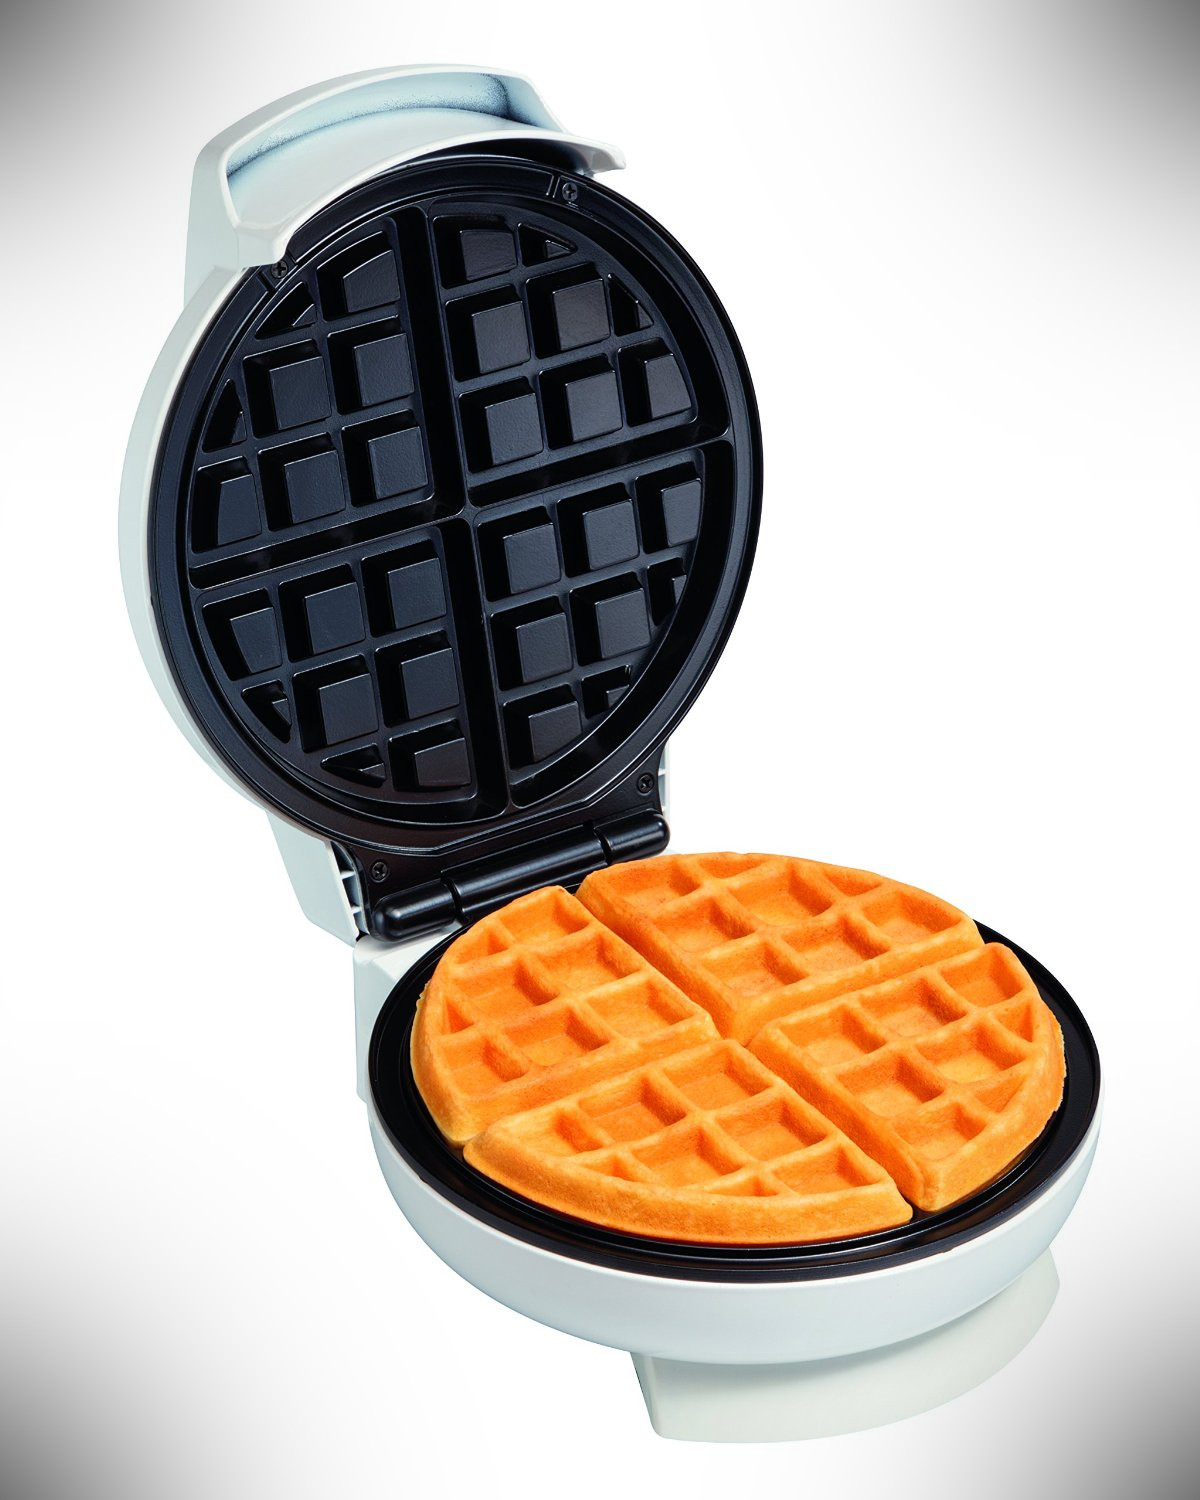 Proctor Silex 26070 - waffle maker